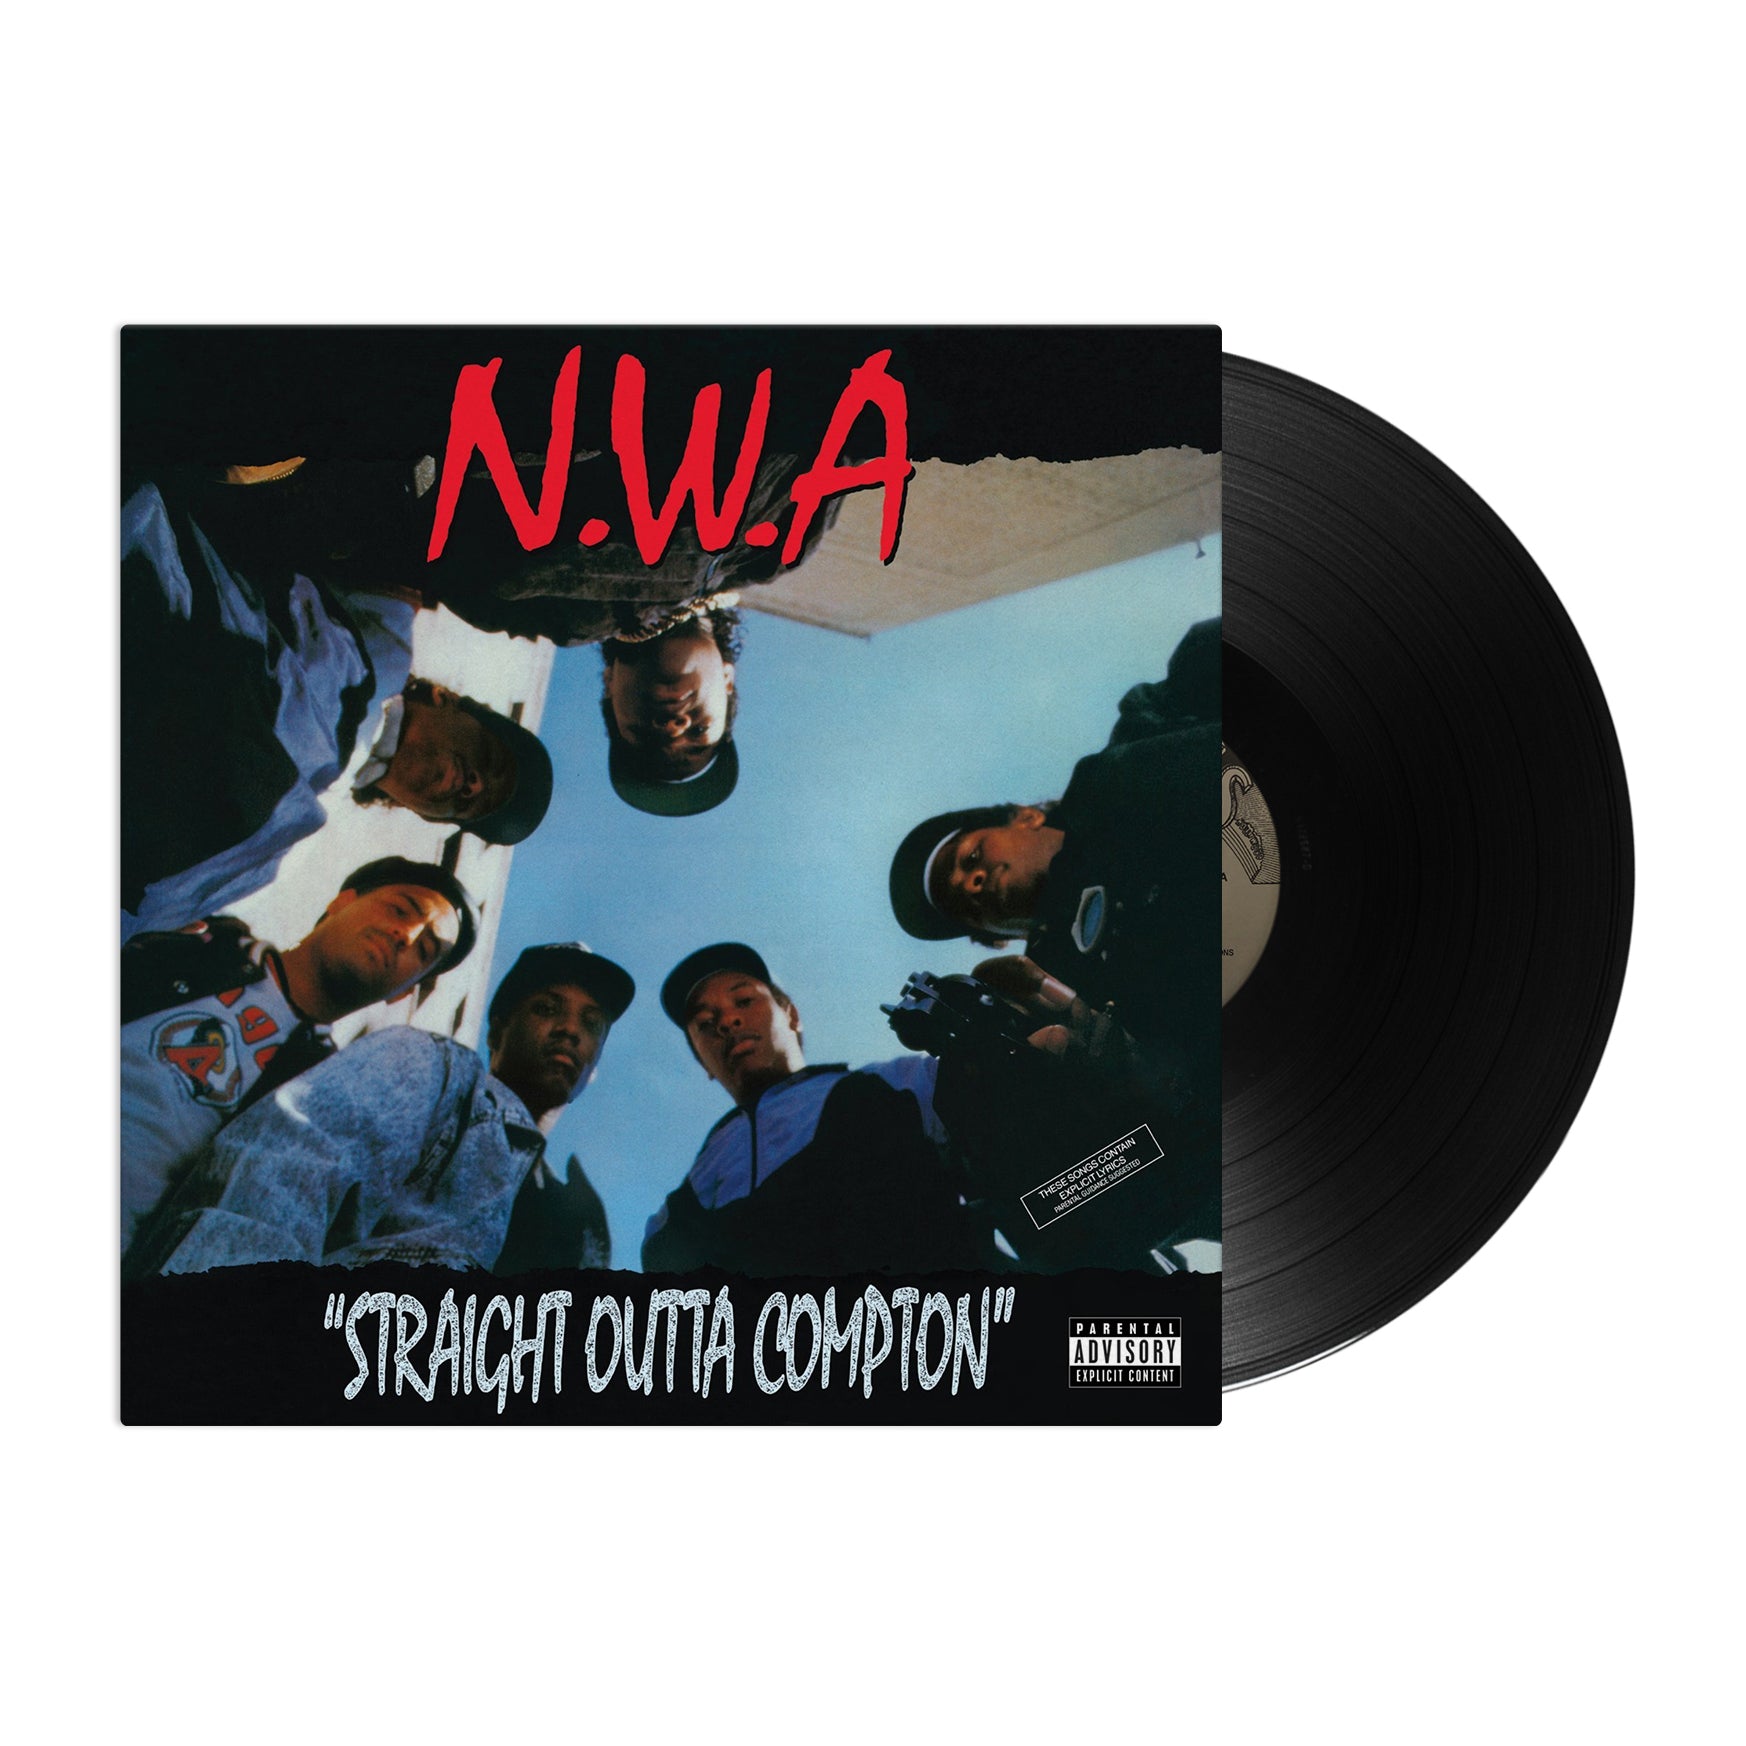 N.W.A. - Straight Outta Compton (Vinyl LP)